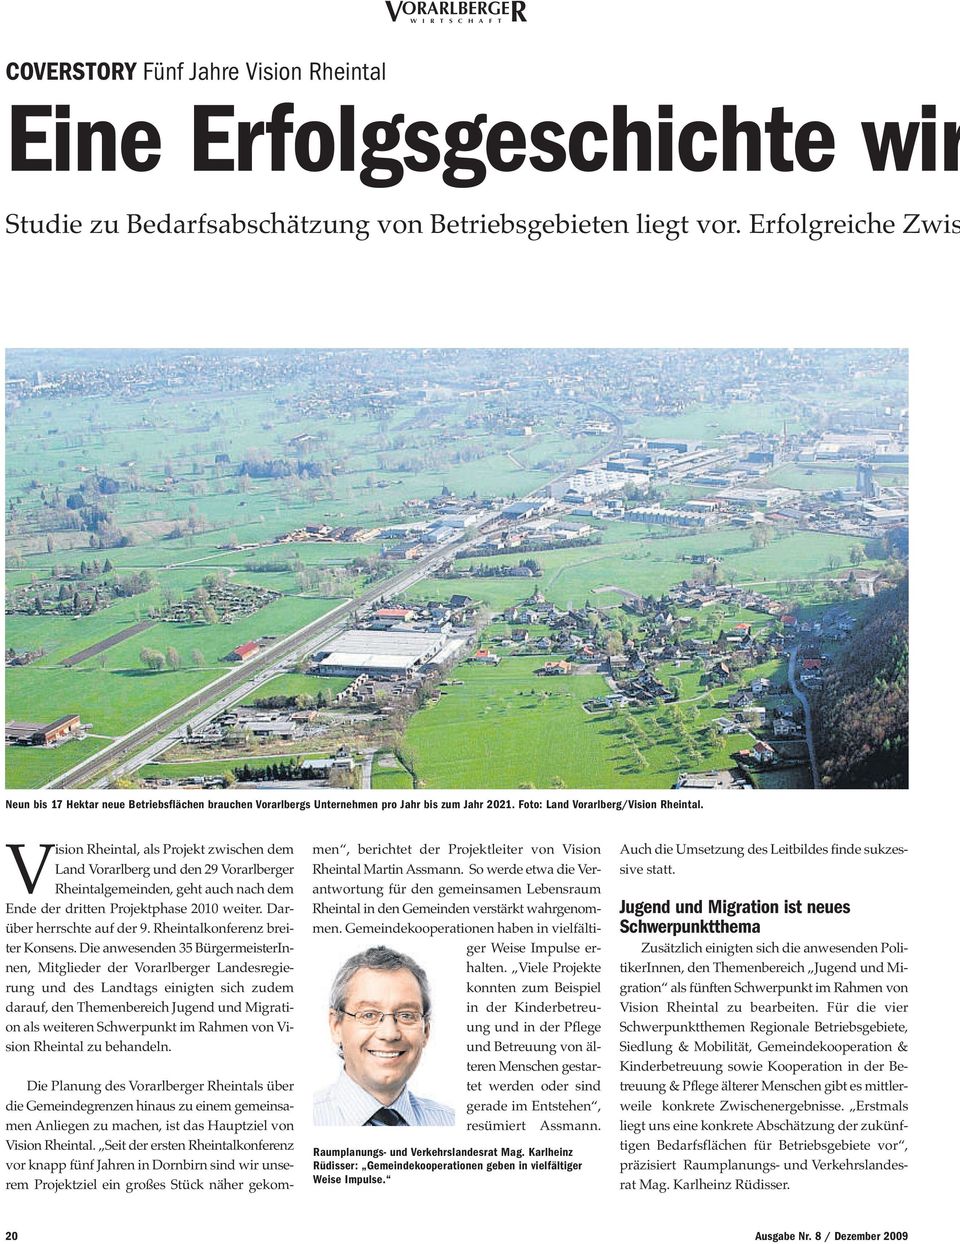 Vision Rheintal, als Projekt zwischen dem Land Vorarlberg und den 29 Vorarlberger Rheintalgemeinden, geht auch nach dem Ende der dritten Projektphase 2010 weiter. Darüber herrschte auf der 9.